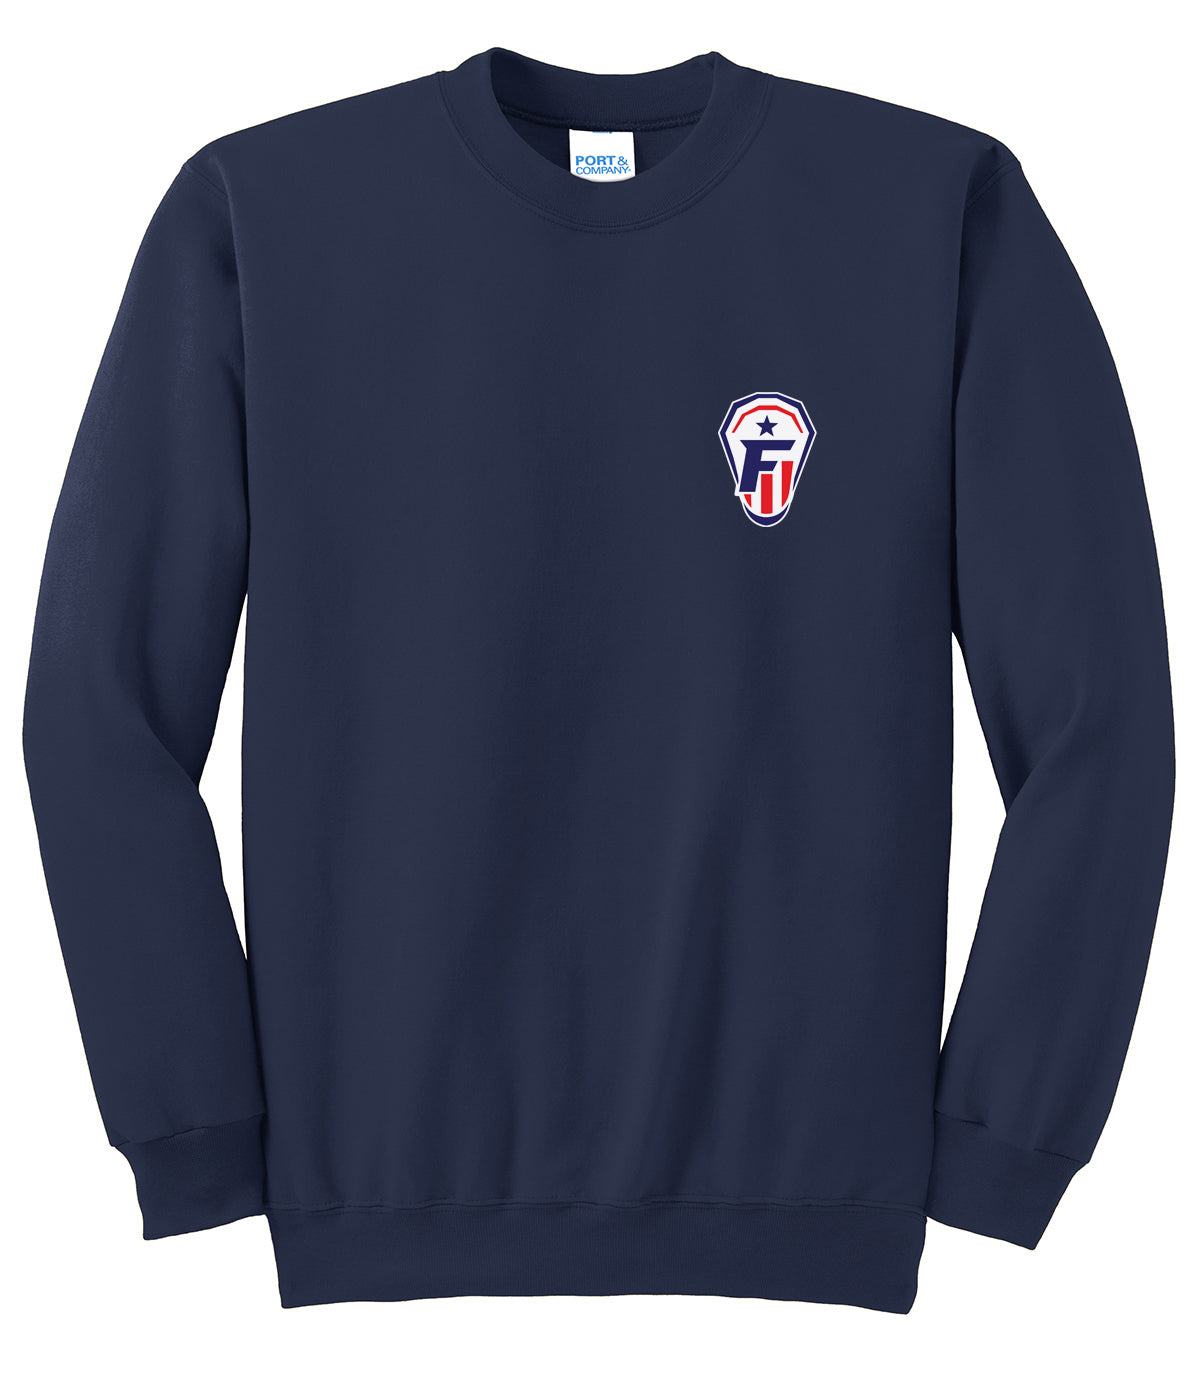 Freedom Lacrosse Navy Crew Neck Sweater